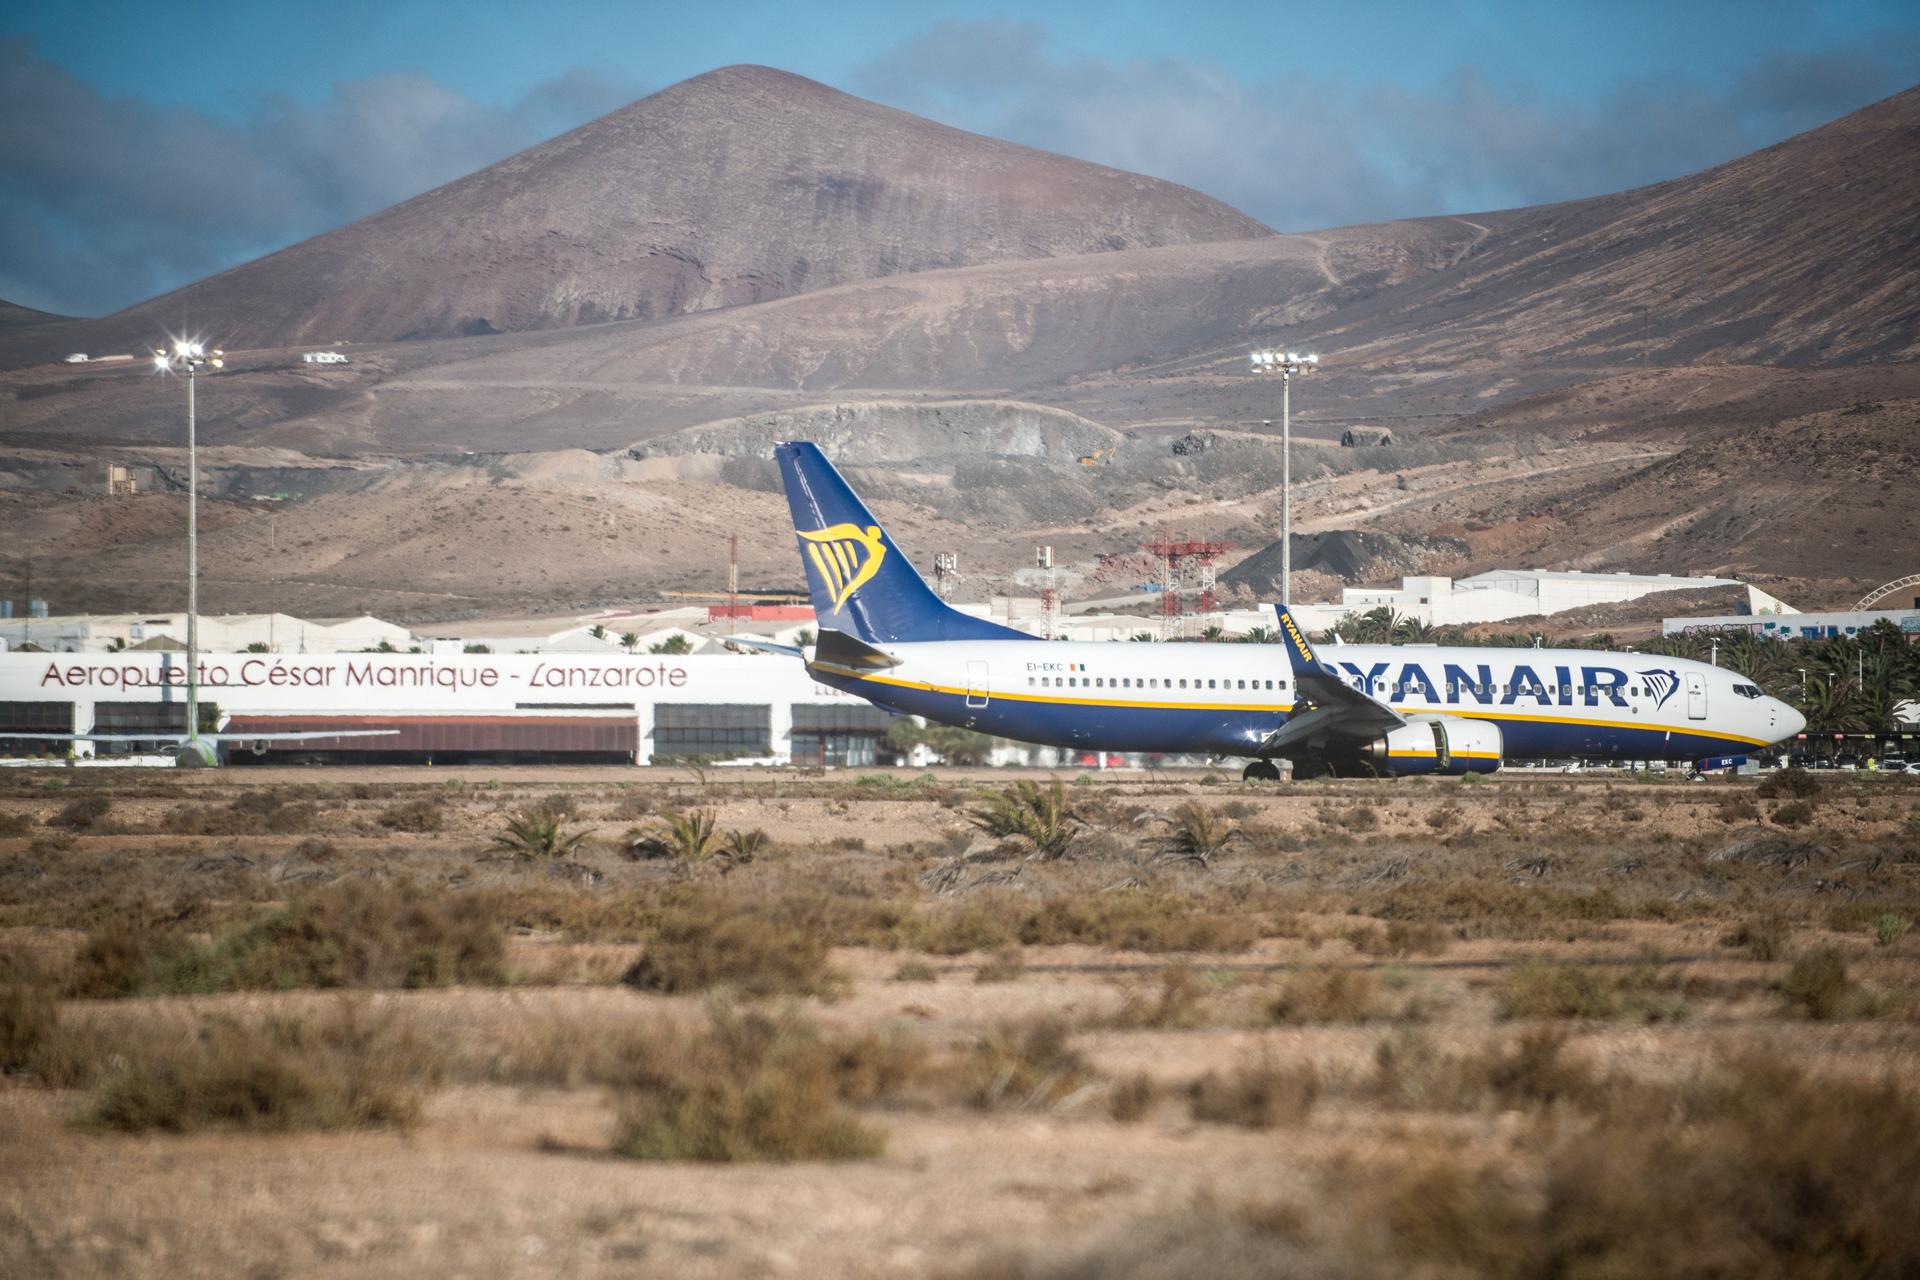 Foto de archivo de un avión de Ryanair aterrizando en el aeropuerto César Manrique de Lanzarote. EFE/Javier Fuentes